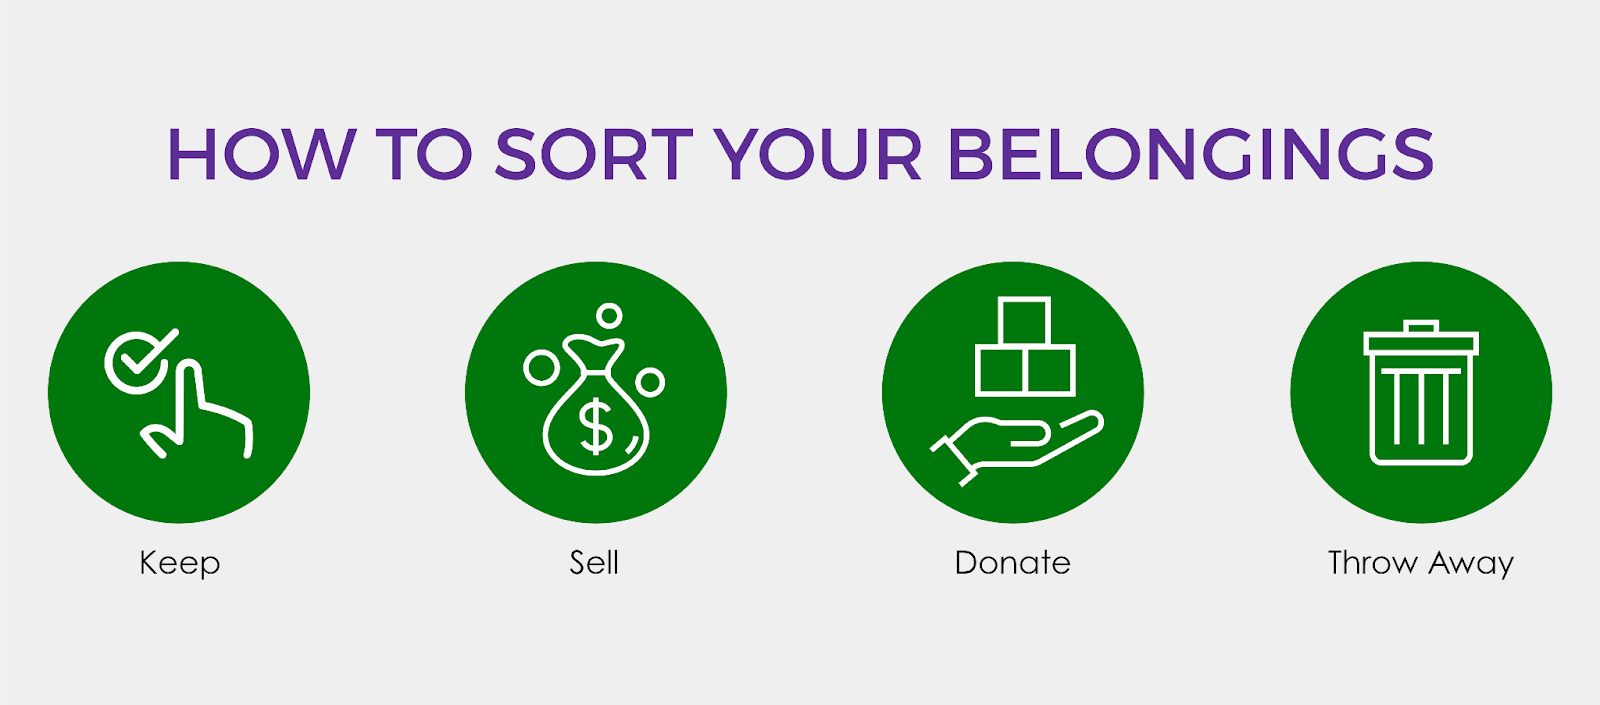 How to sort your belongings